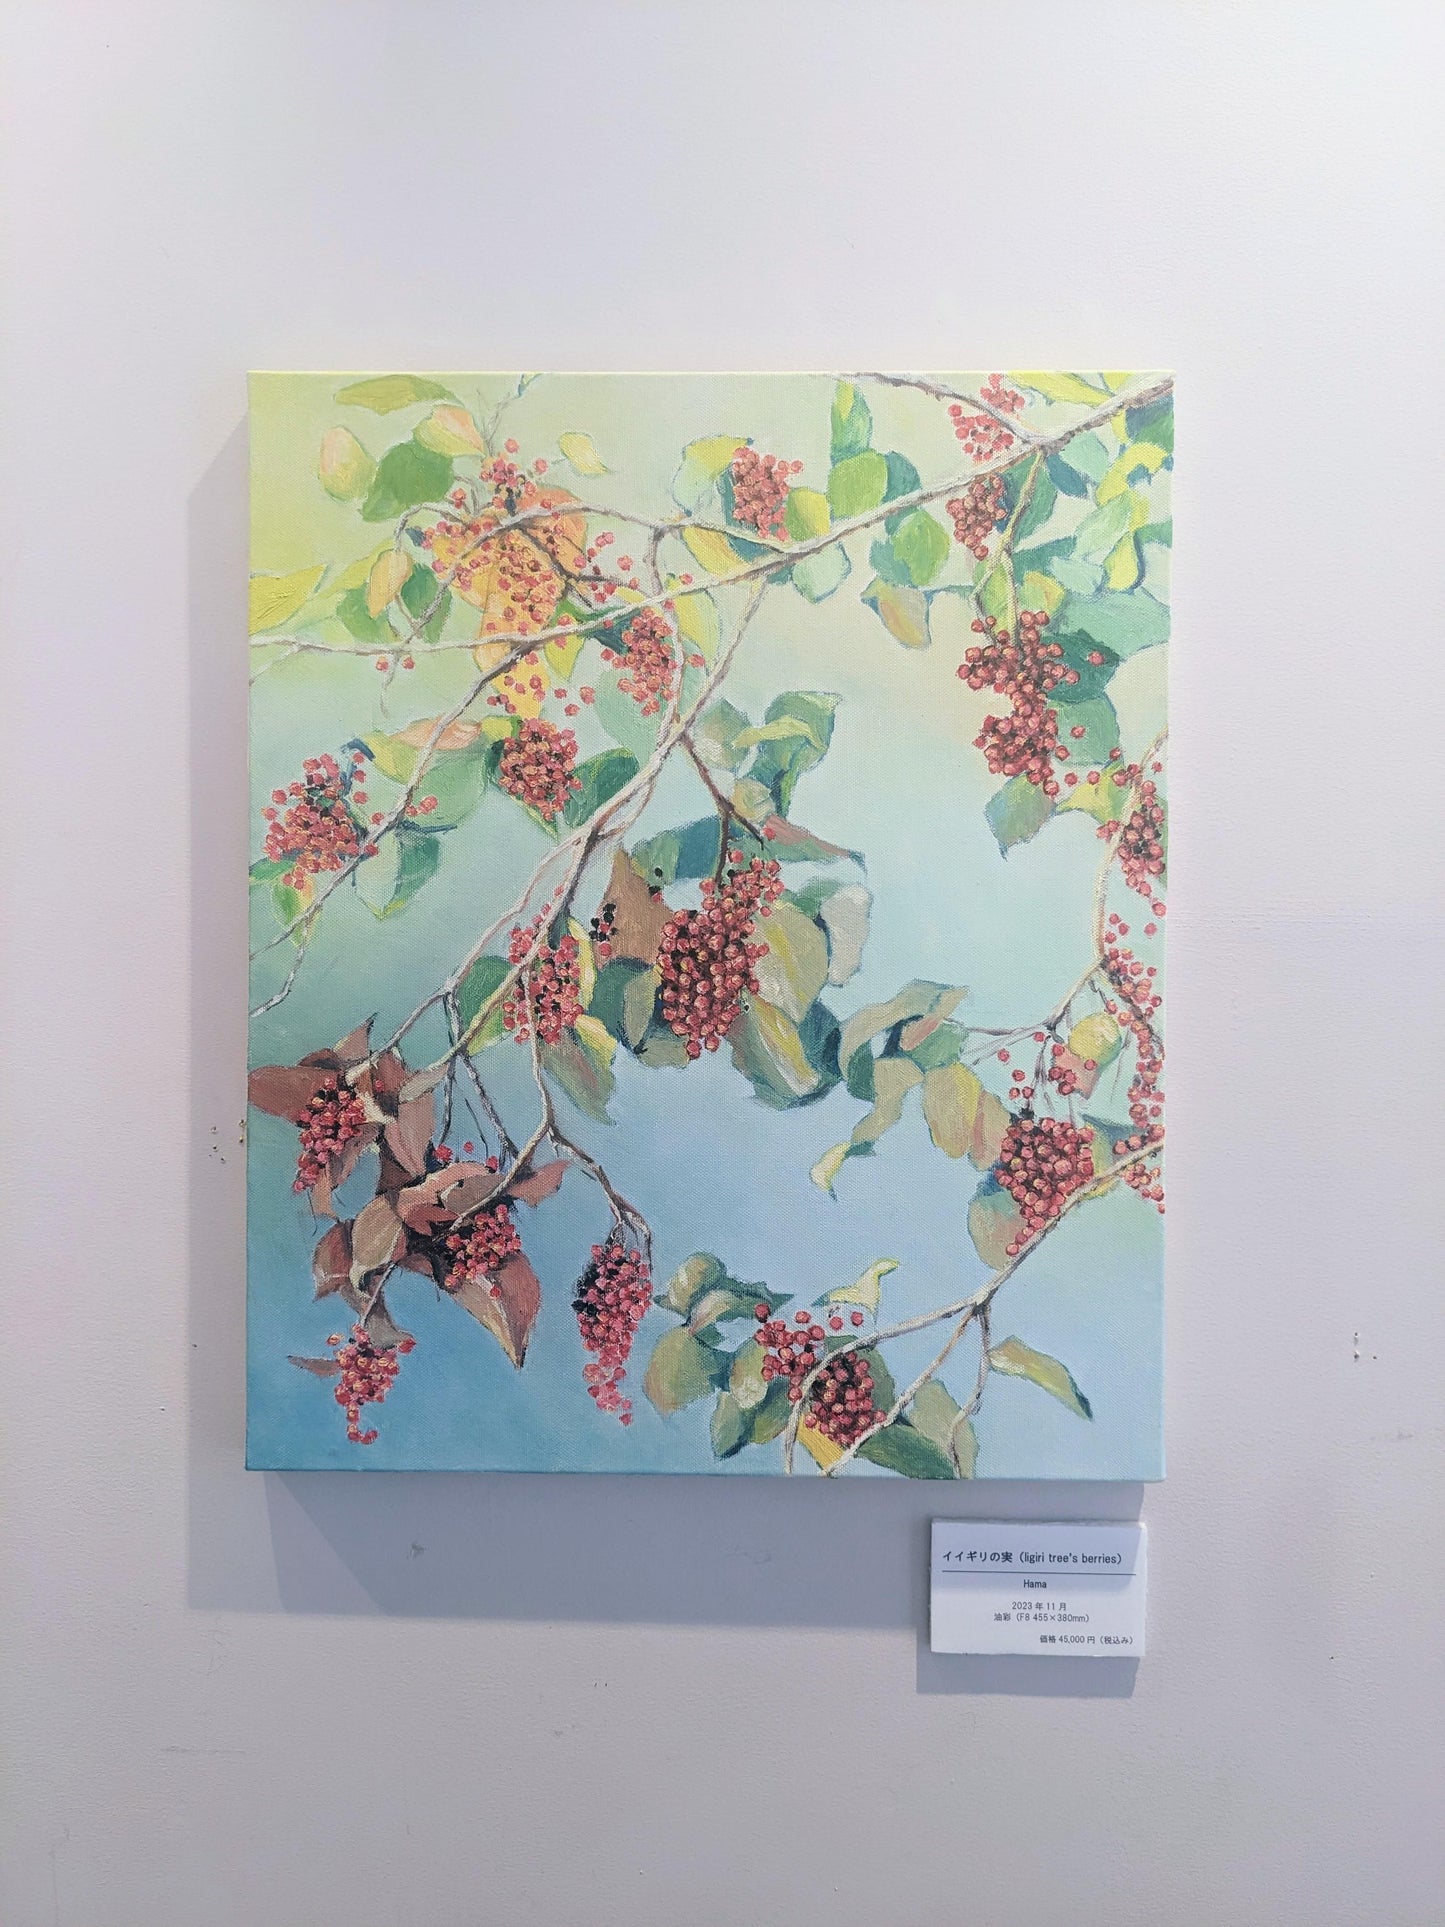 『イイギリの実(Iigiri Tree's Berries)』 - FROM ARTIST